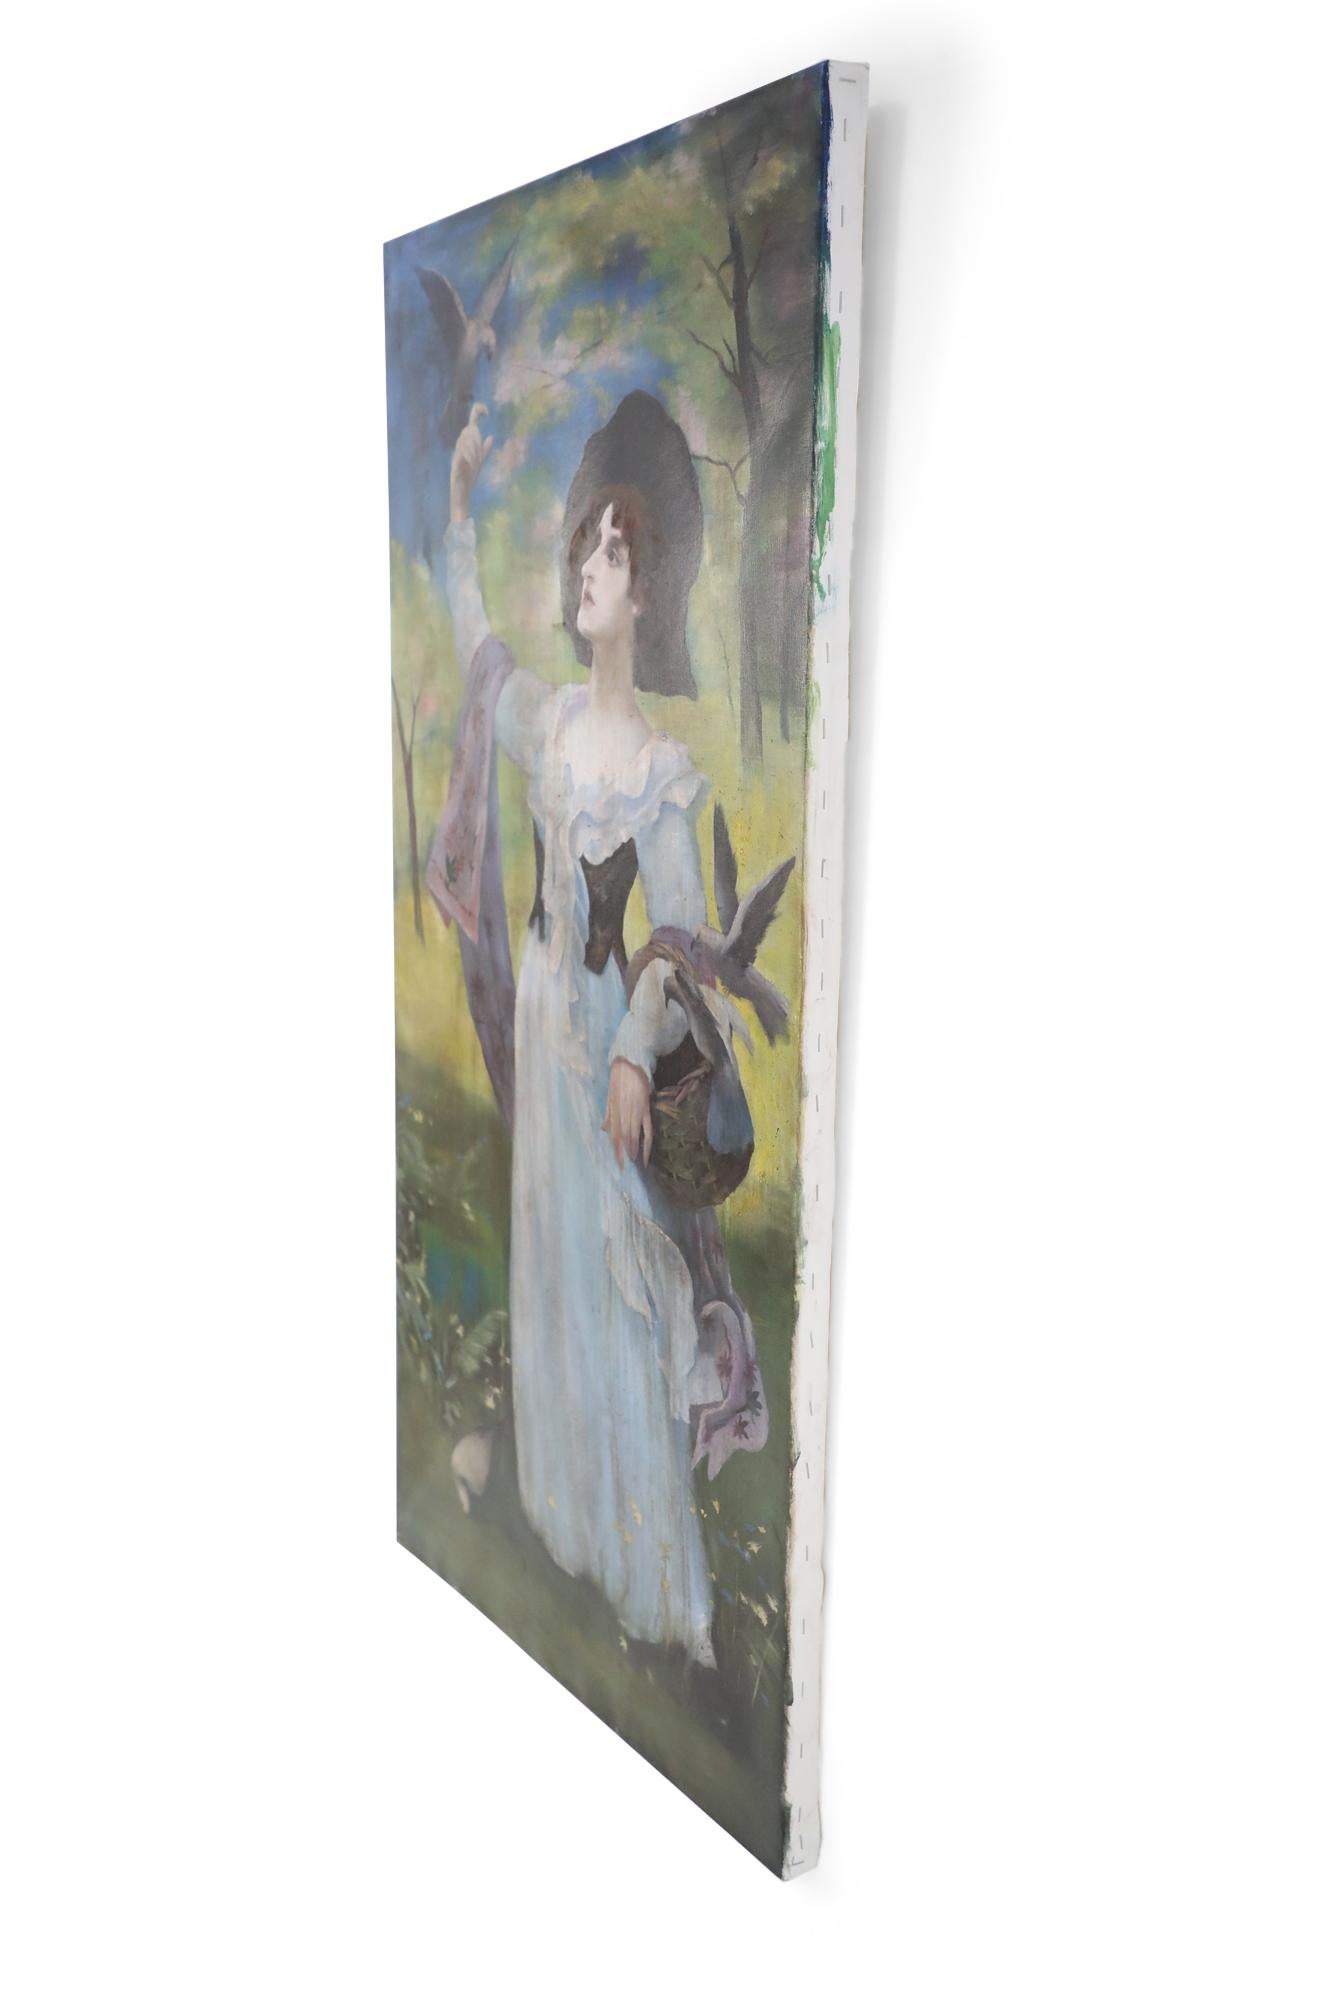 Ungerahmtes Vintage-Gemälde (20. Jahrhundert) einer Frau in weißem Kleid und lilafarbenem Schal in einer natürlichen Umgebung, mit einem Korb auf einem Arm und einem Vogel auf der gegenüberliegenden, erhobenen Hand, gemalt auf Keilrahmen.